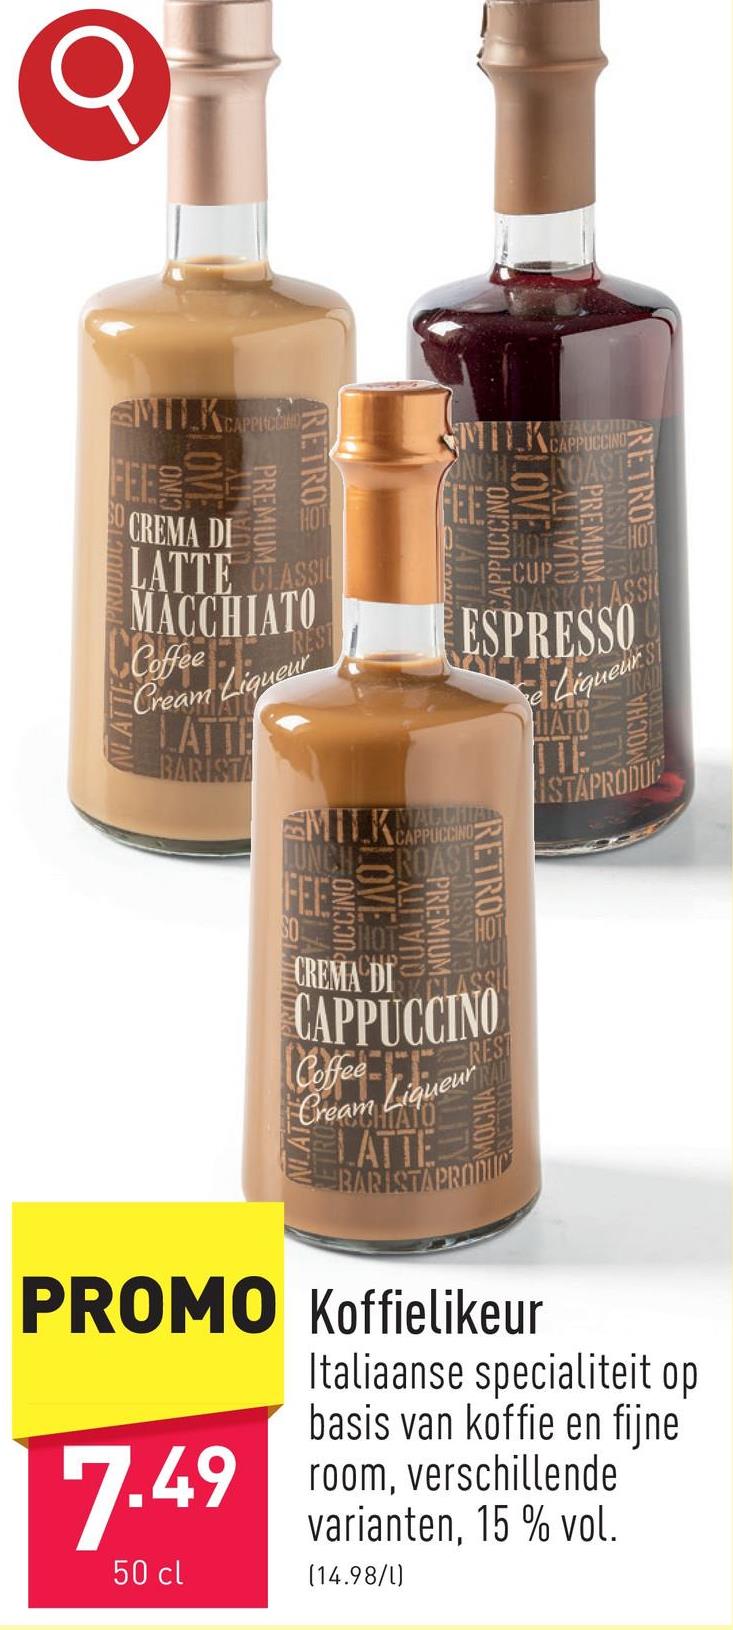 Koffielikeur Italiaanse specialiteit op basis van koffie en fijne room, keuze uit verschillende varianten, 15 % vol.